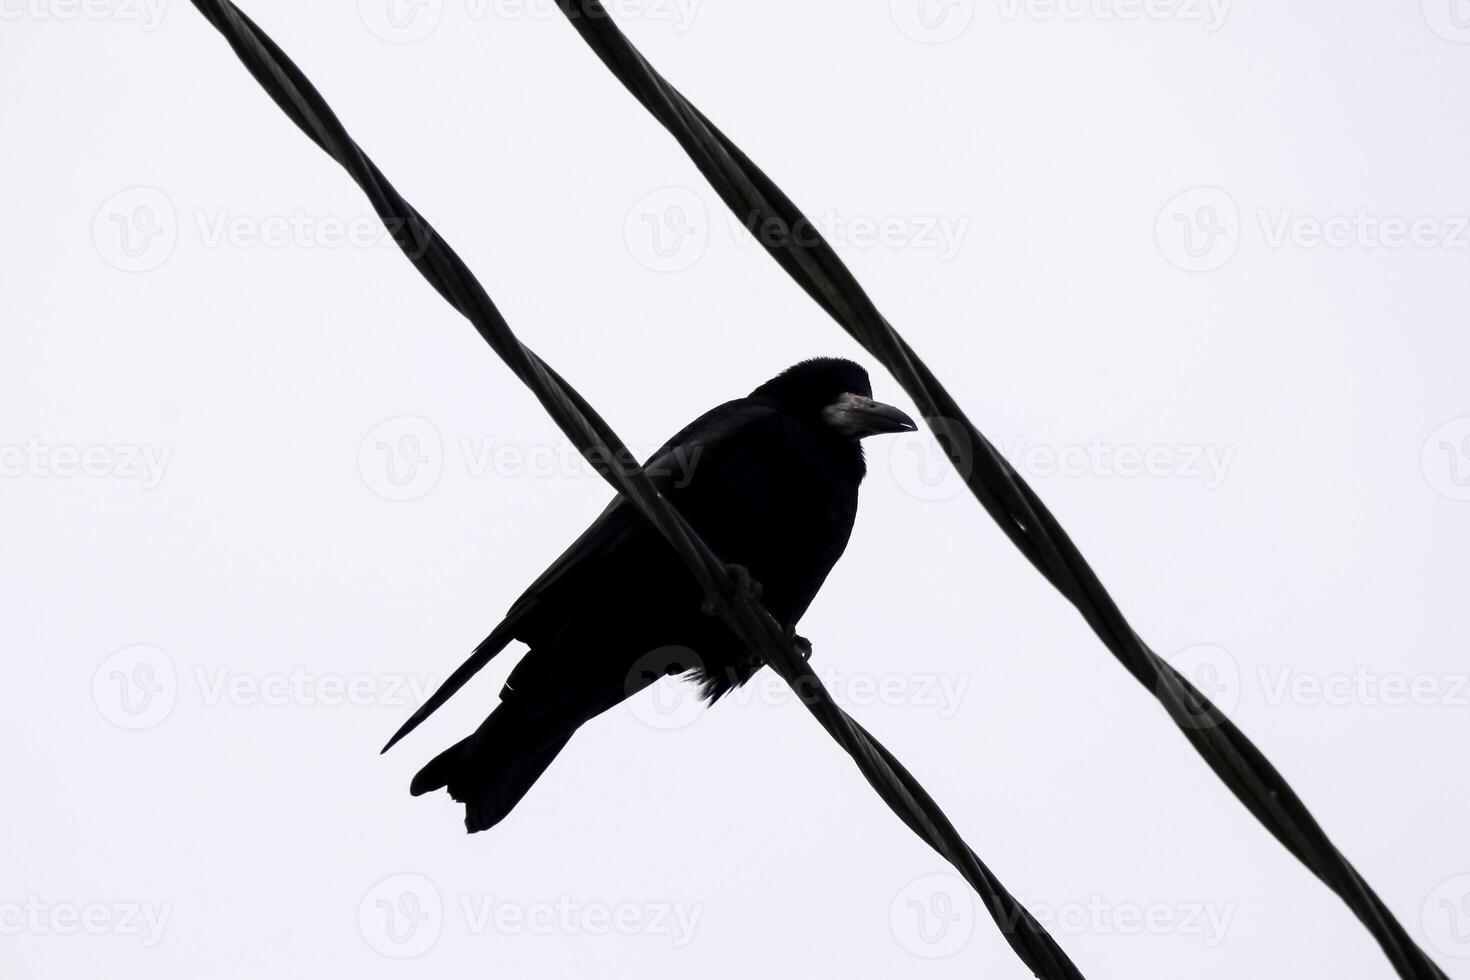 Stark schwarz zwei Elektrizität Drähte gegen Winter Himmel, mit ein Krähe gehockt, Erstellen ein zauberhaft städtisch Szene Unterseite oben Aussicht foto